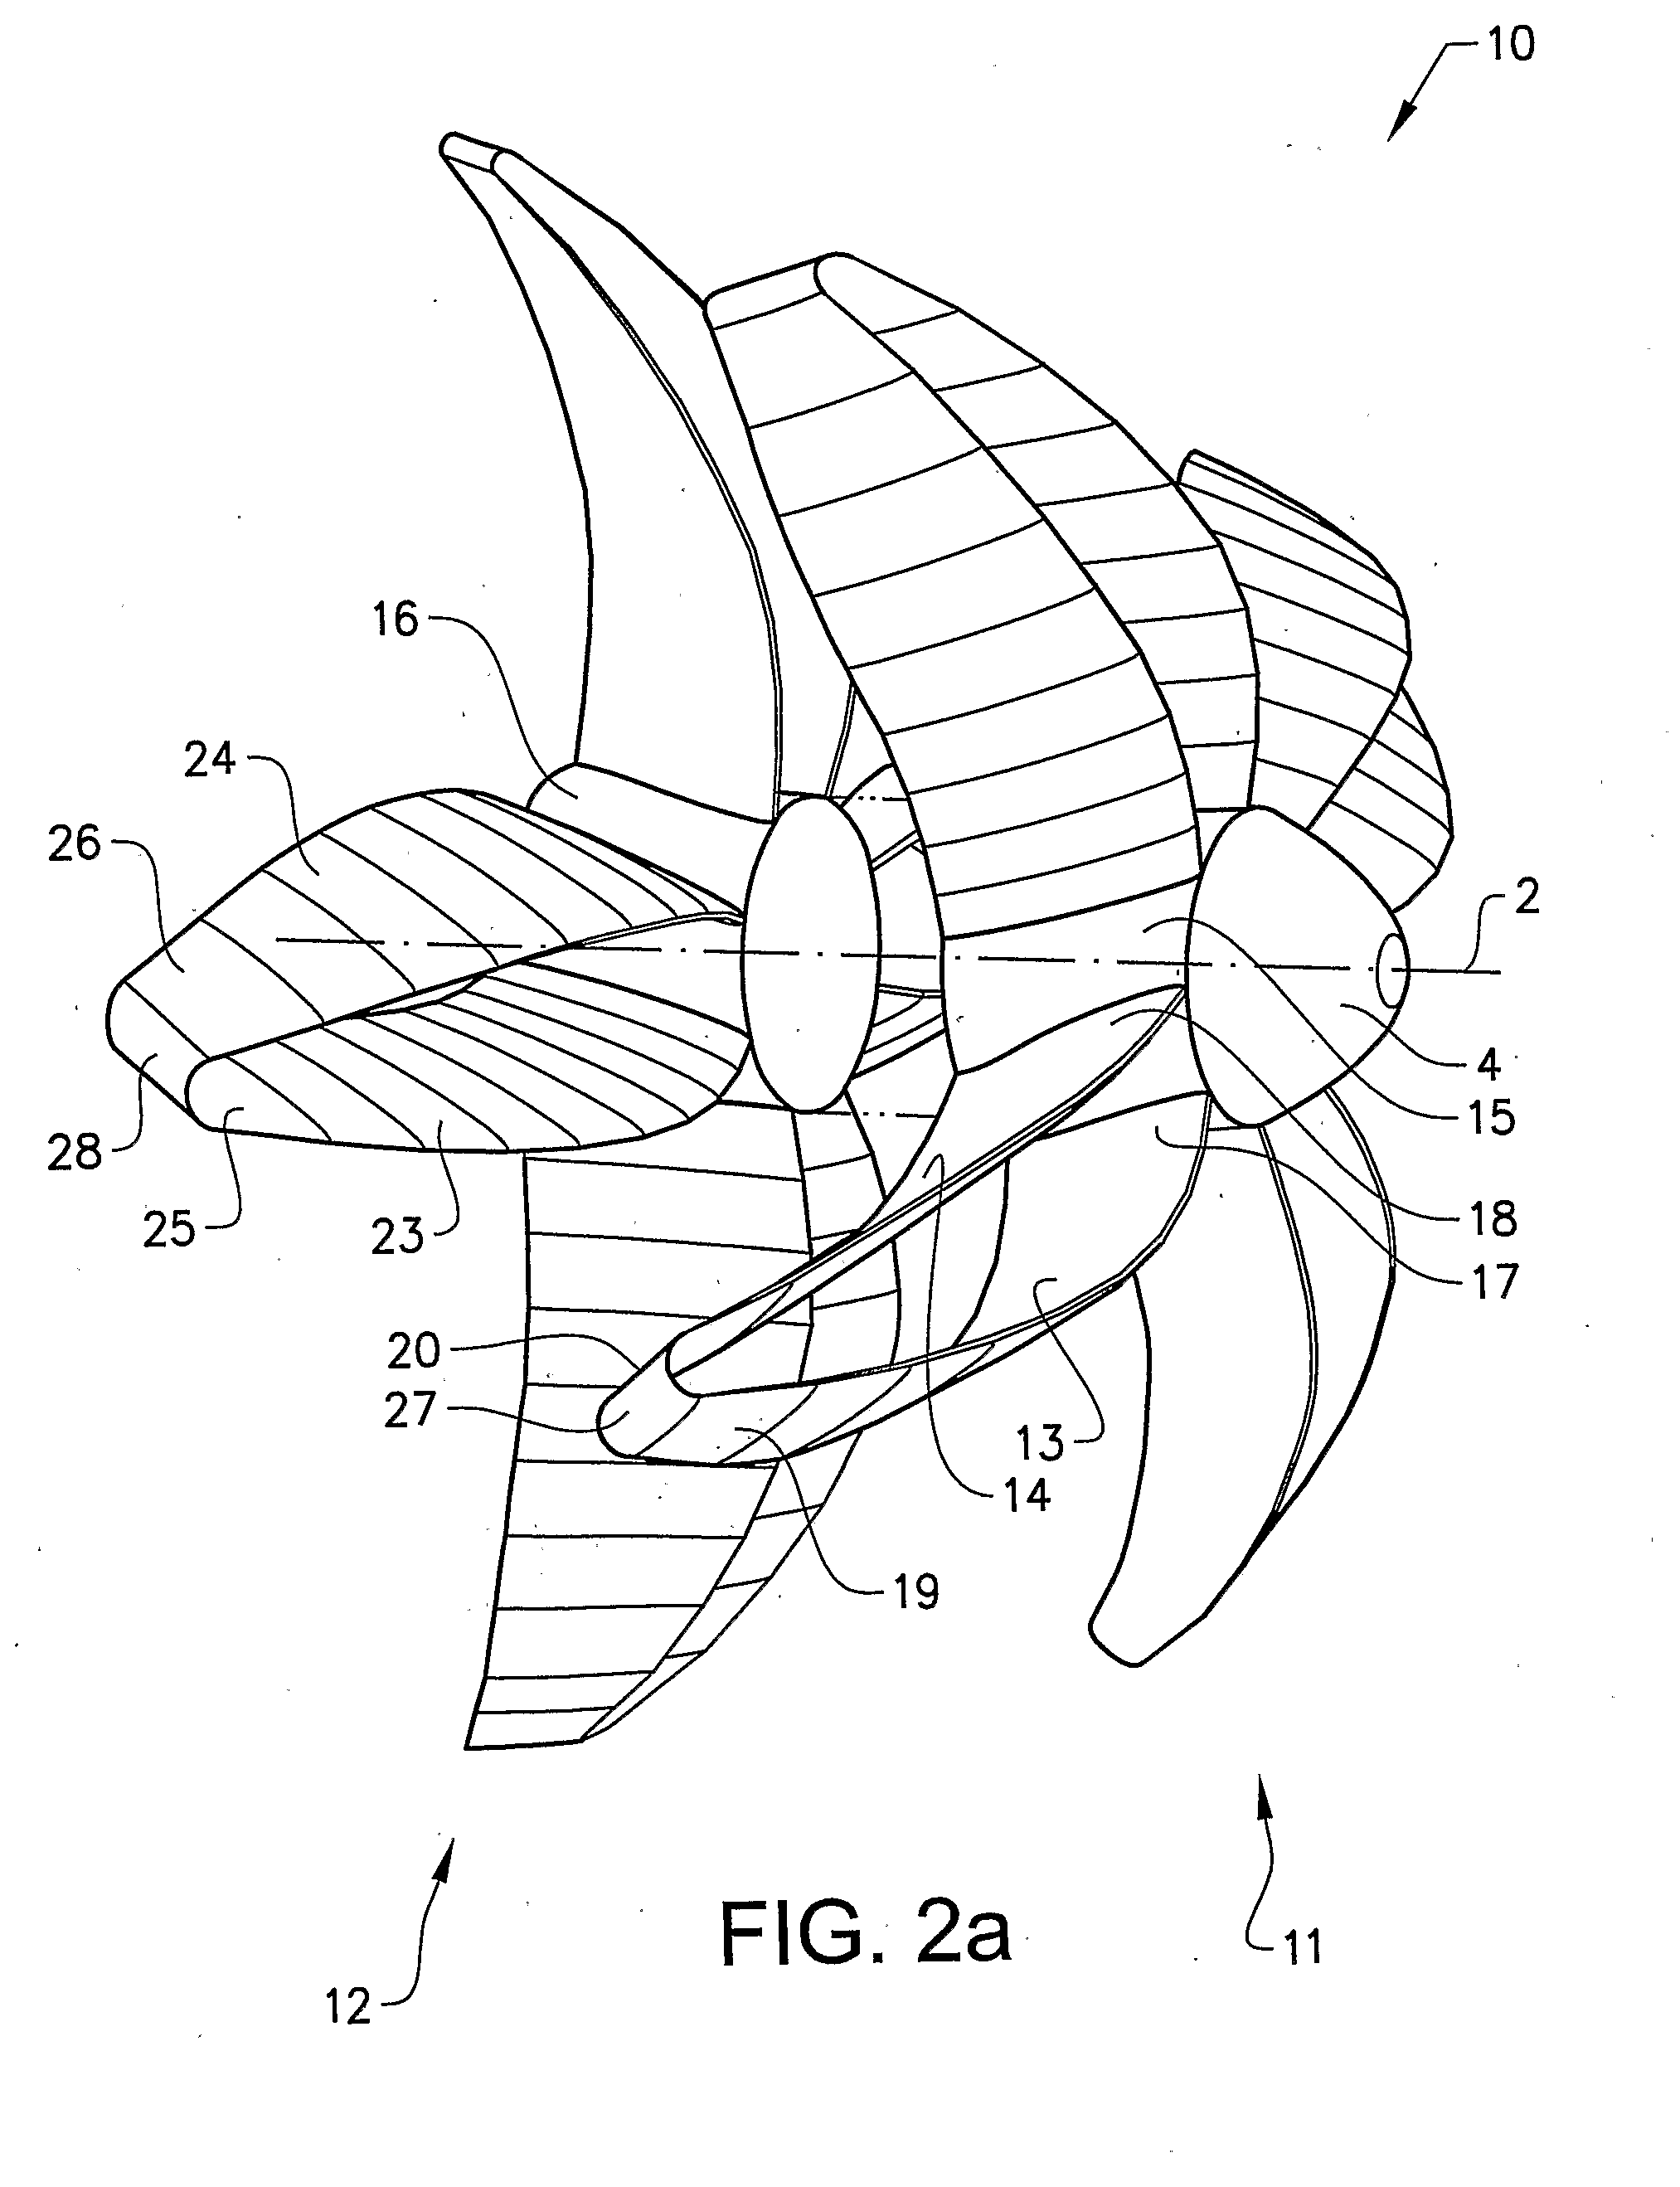 Air propeller arrangement and aircraft